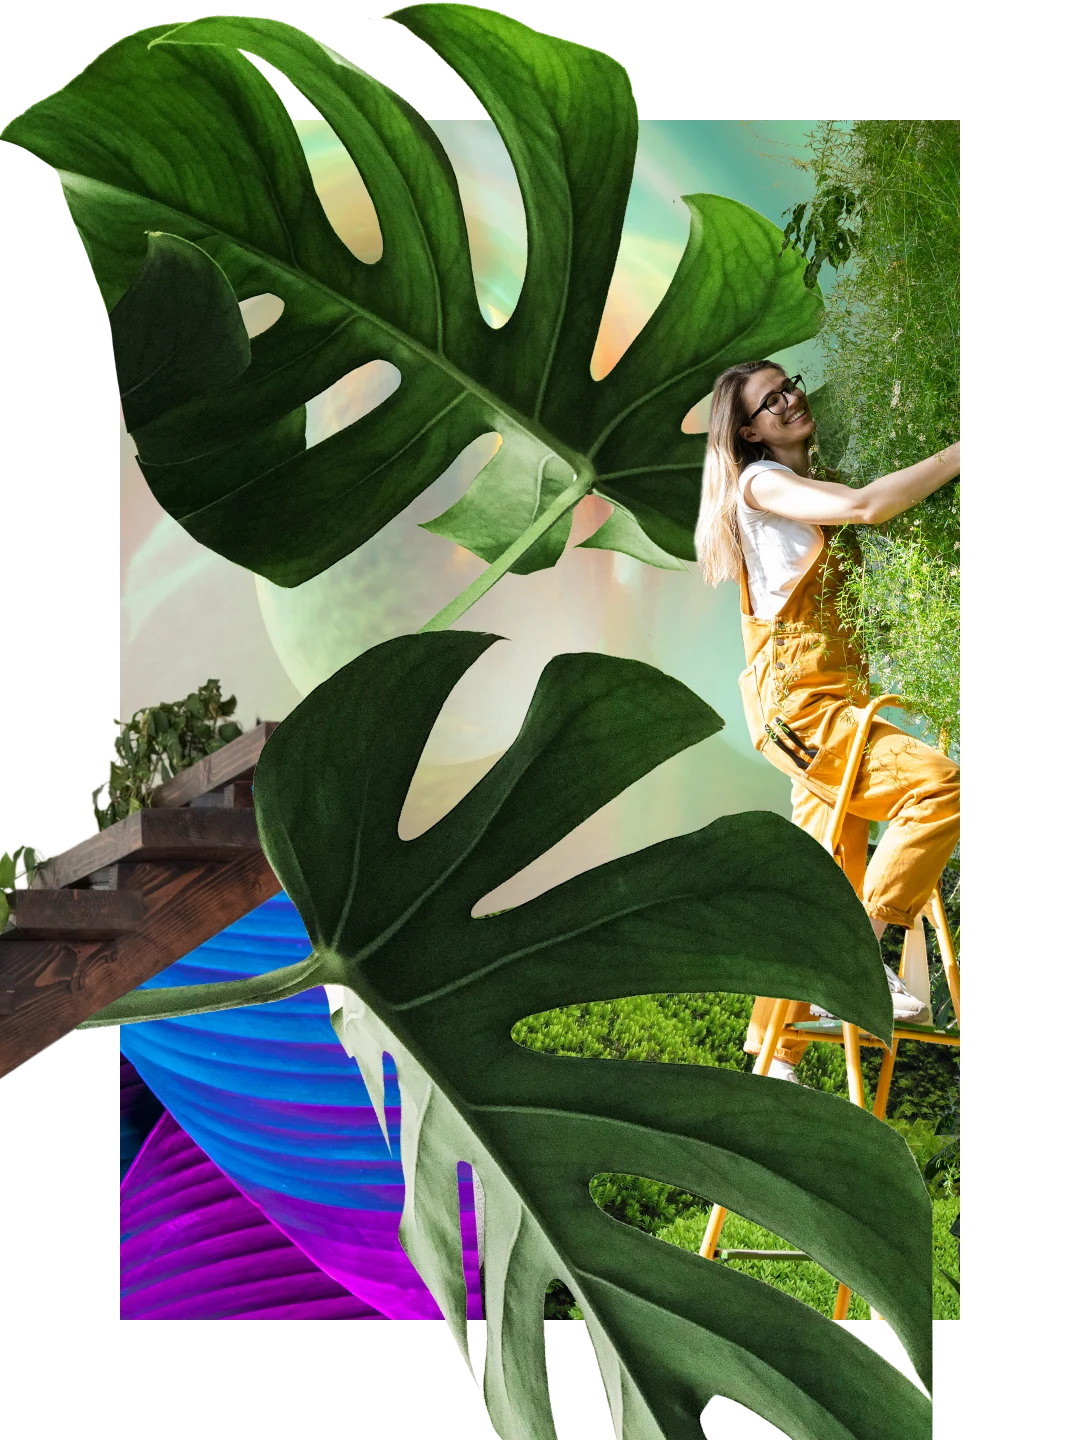 Collage de vegetación. Dos hojas grandes de monstera. Escalera con hojas en el fondo. Mujer de piel clara con mono amarillo en una escalera portátil haciendo el mantenimiento de una planta.
